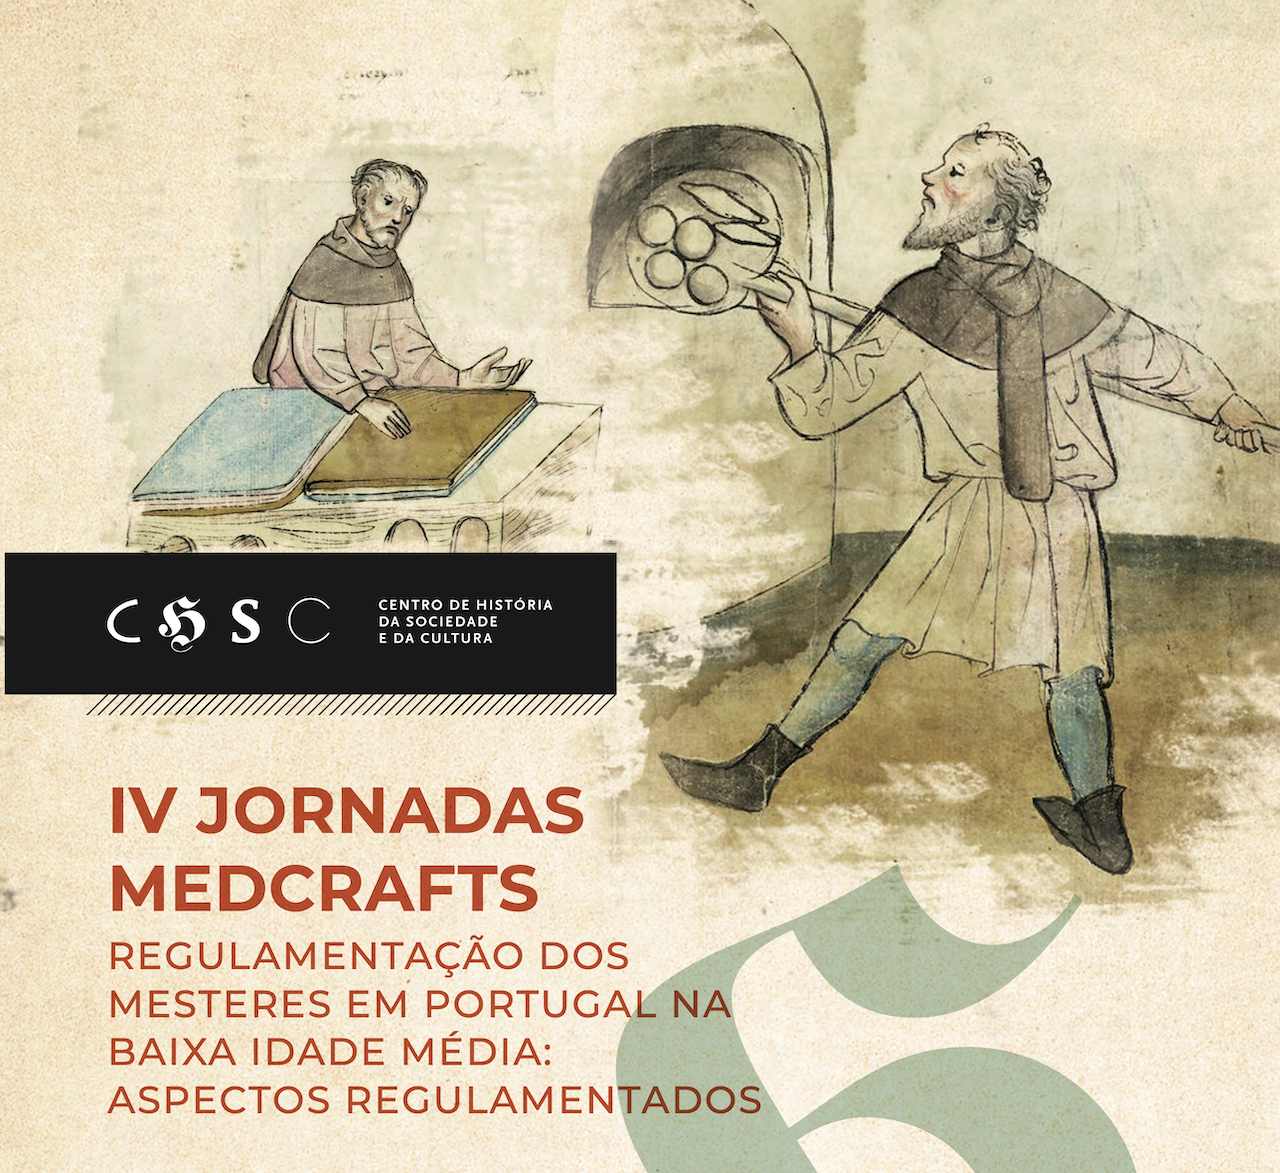 IV Jornadas Medcrafts: Regulamentação dos mesteres em Portugal na Baixa Idade Média: aspectos regulamentados